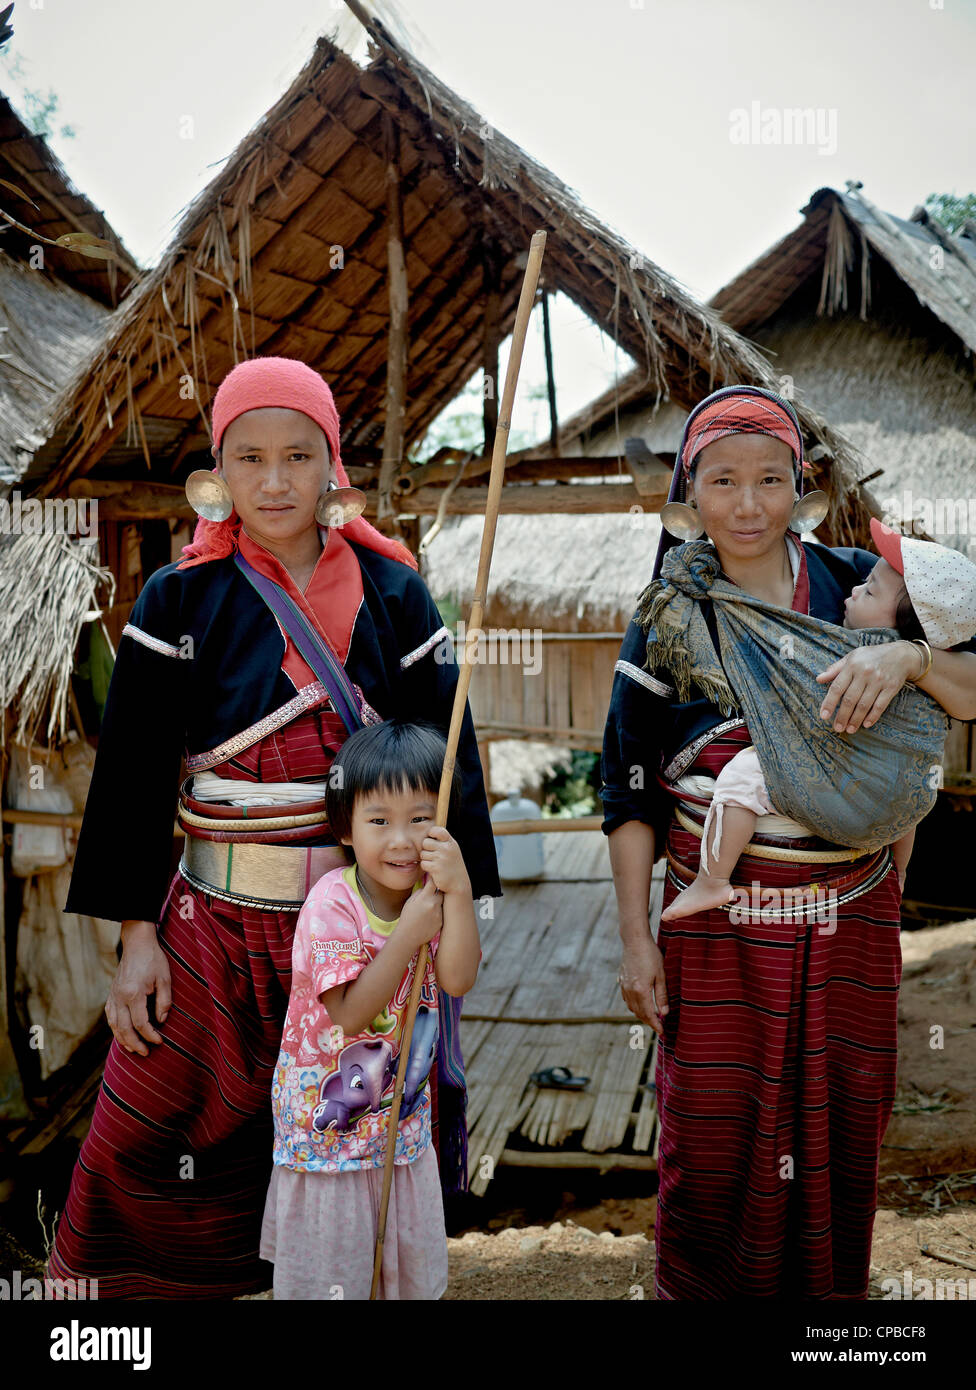 Pelong Hill Tribe (großer Ohrring) Frauen und Kinder der nördlichen Bergstämme Thailands. Chiang Mai. Ländliche Thailand Menschen S.E. Asien. Bergstämme Stockfoto